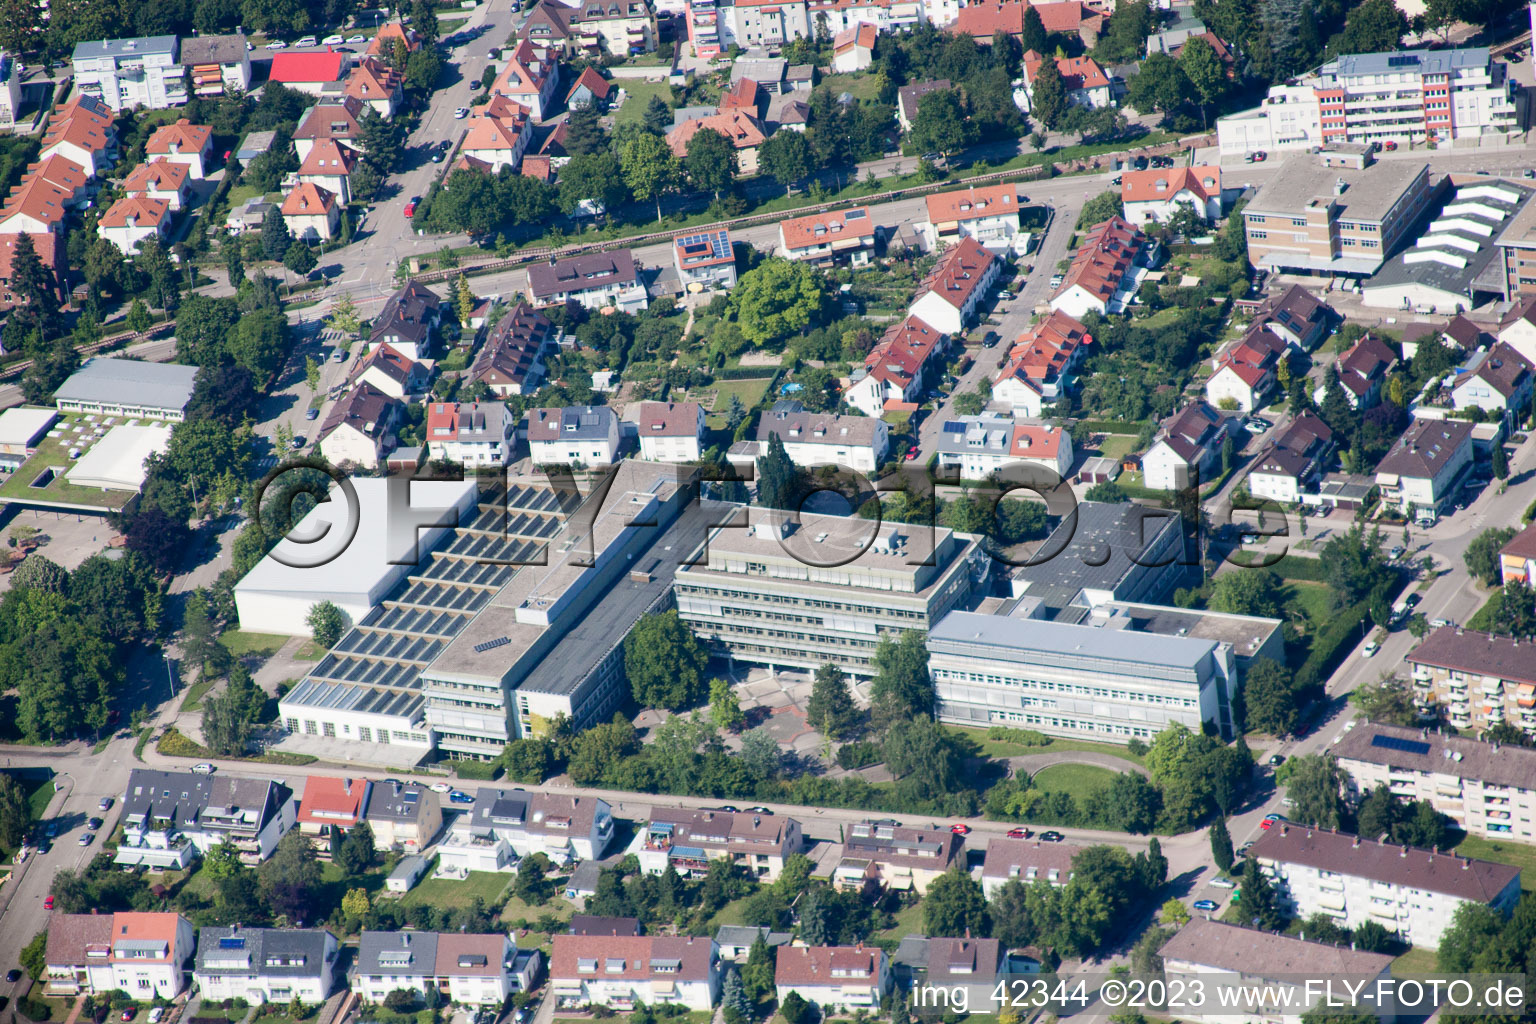 Luftbild von Albert Einstein Schule in Ettlingen im Bundesland Baden-Württemberg, Deutschland